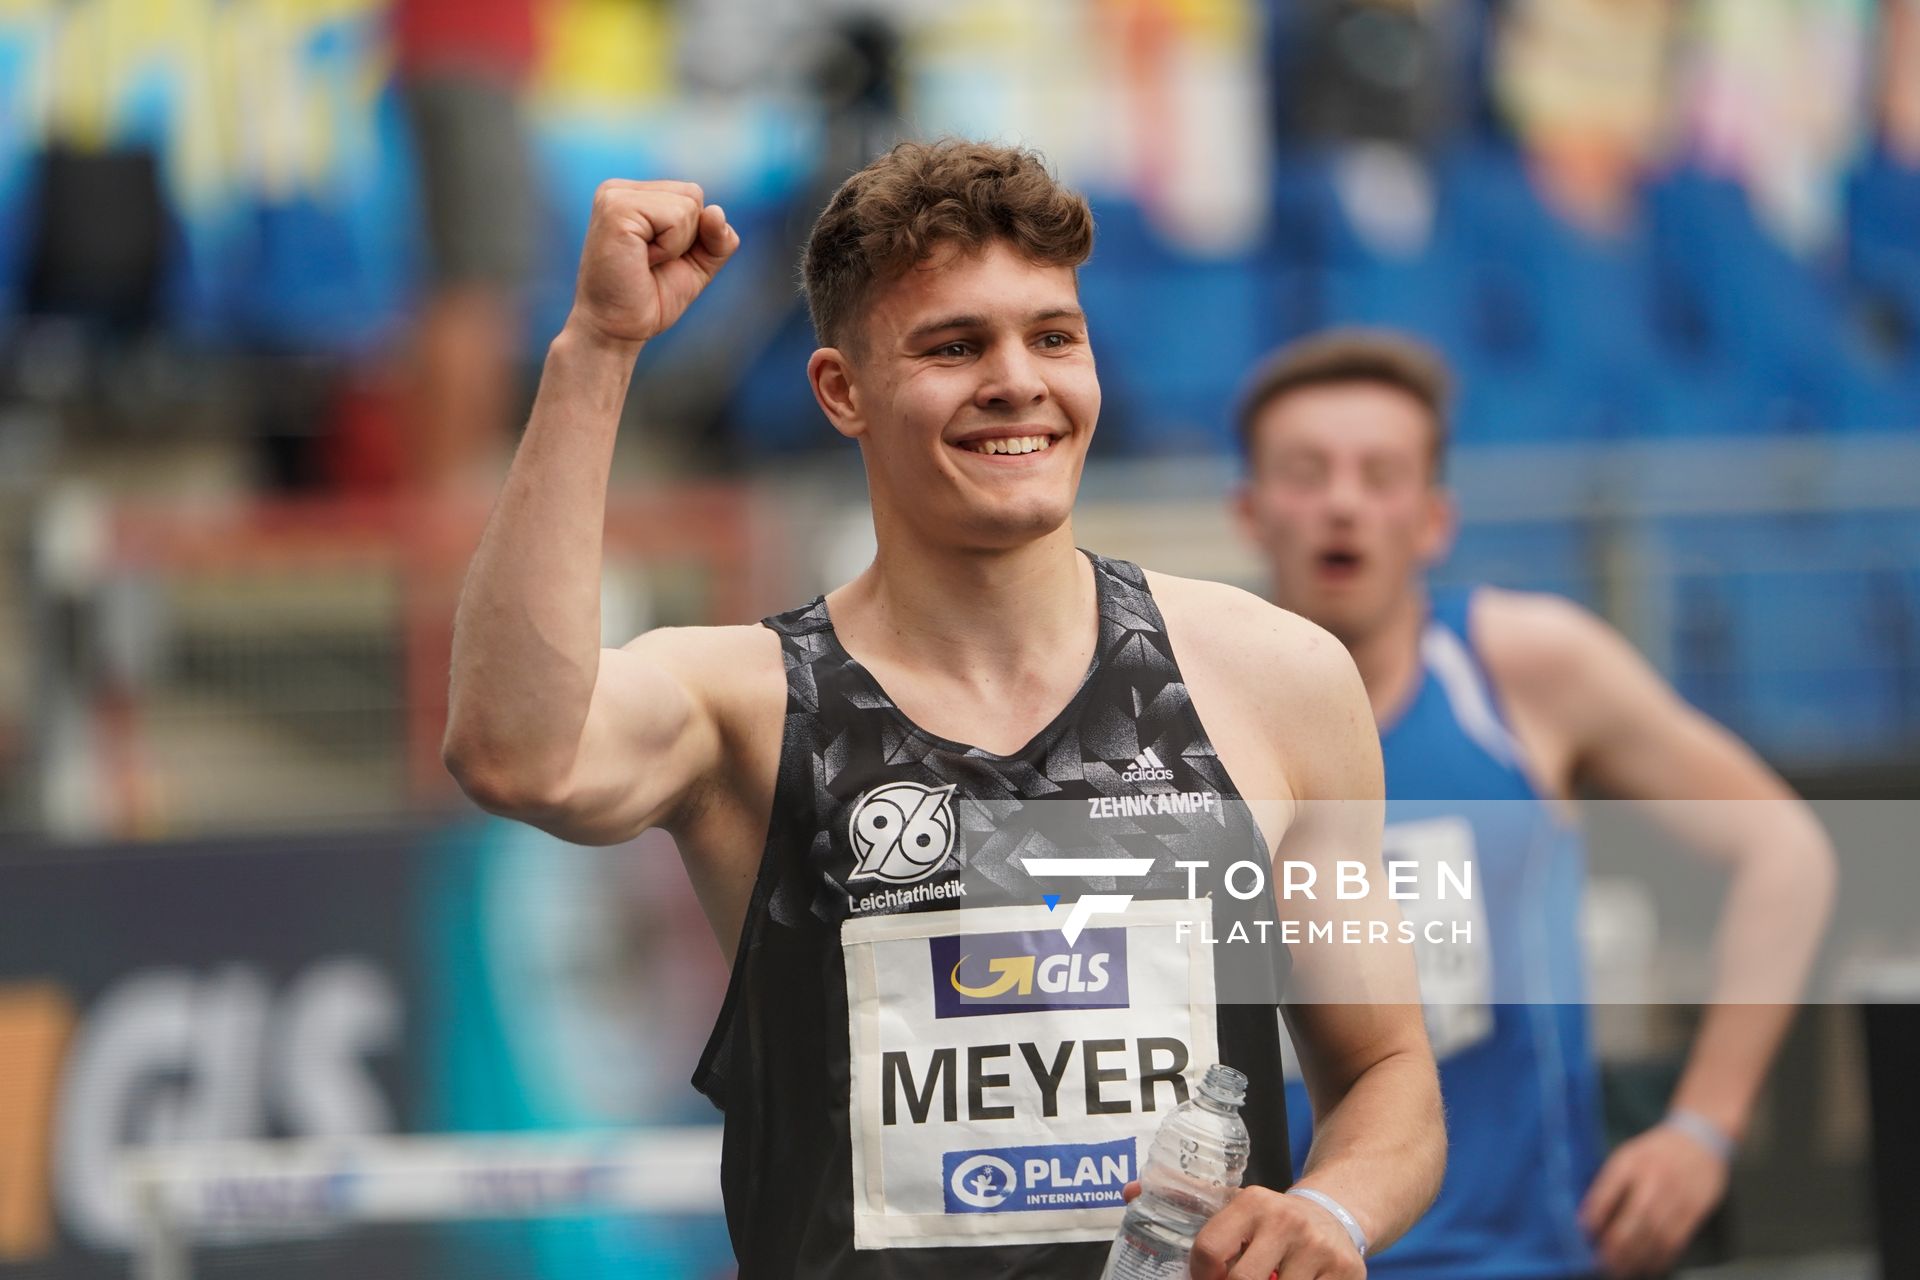 Marcel Meyer (Hannover 96) nach dem Vorlauf ueber 400m am 05.06.2021 waehrend den deutschen Leichtathletik-Meisterschaften 2021 im Eintracht-Stadion in Braunschweig